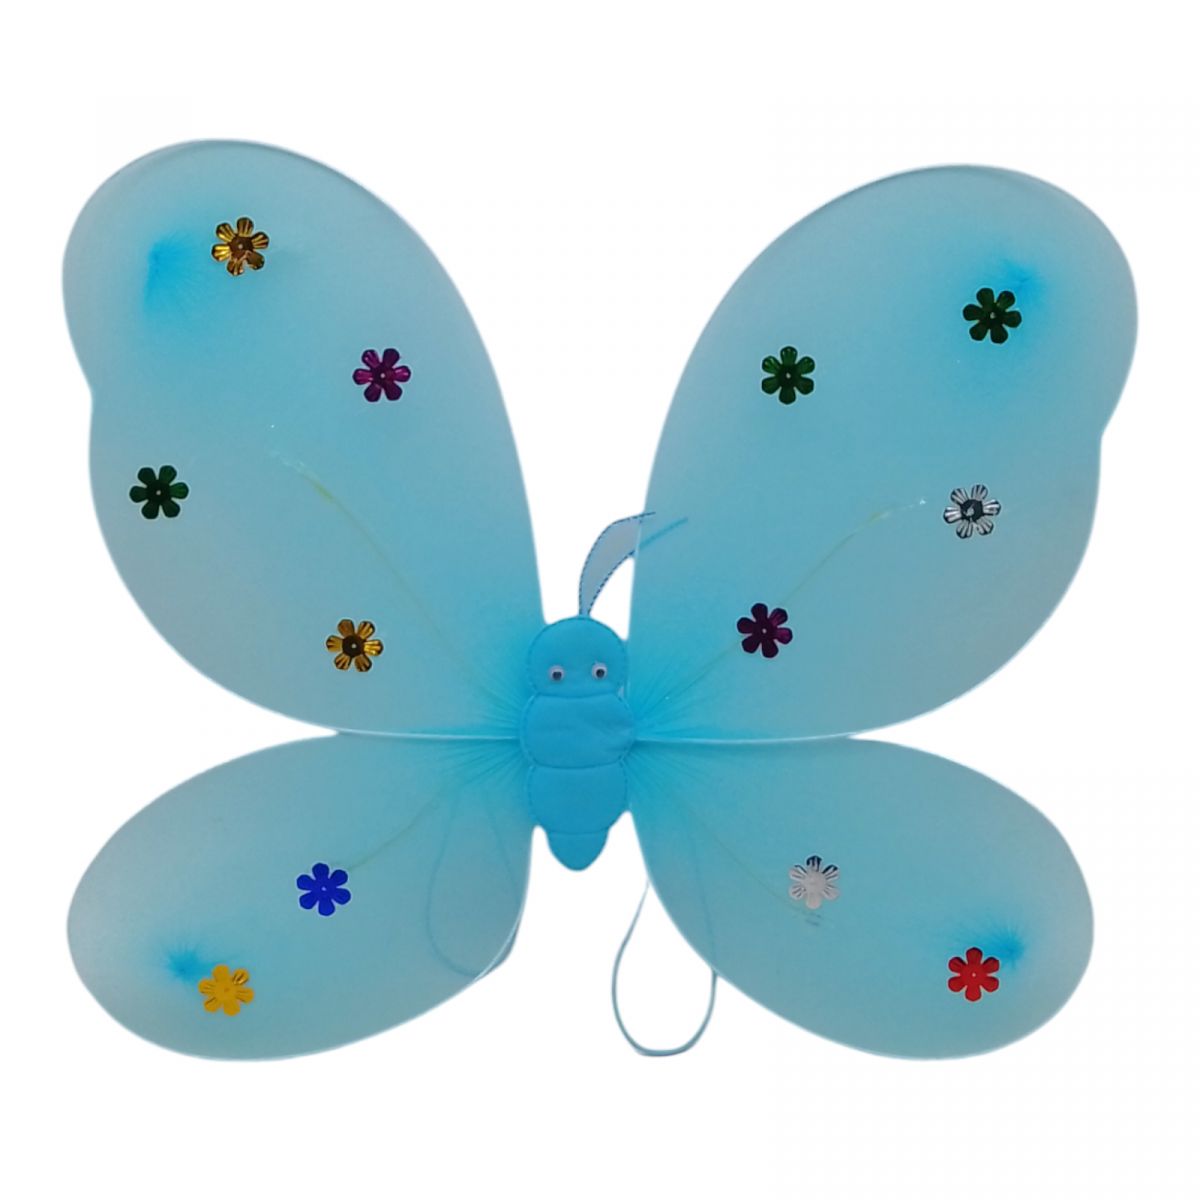 Крылья бабочки со световыми эффектами (голубые)